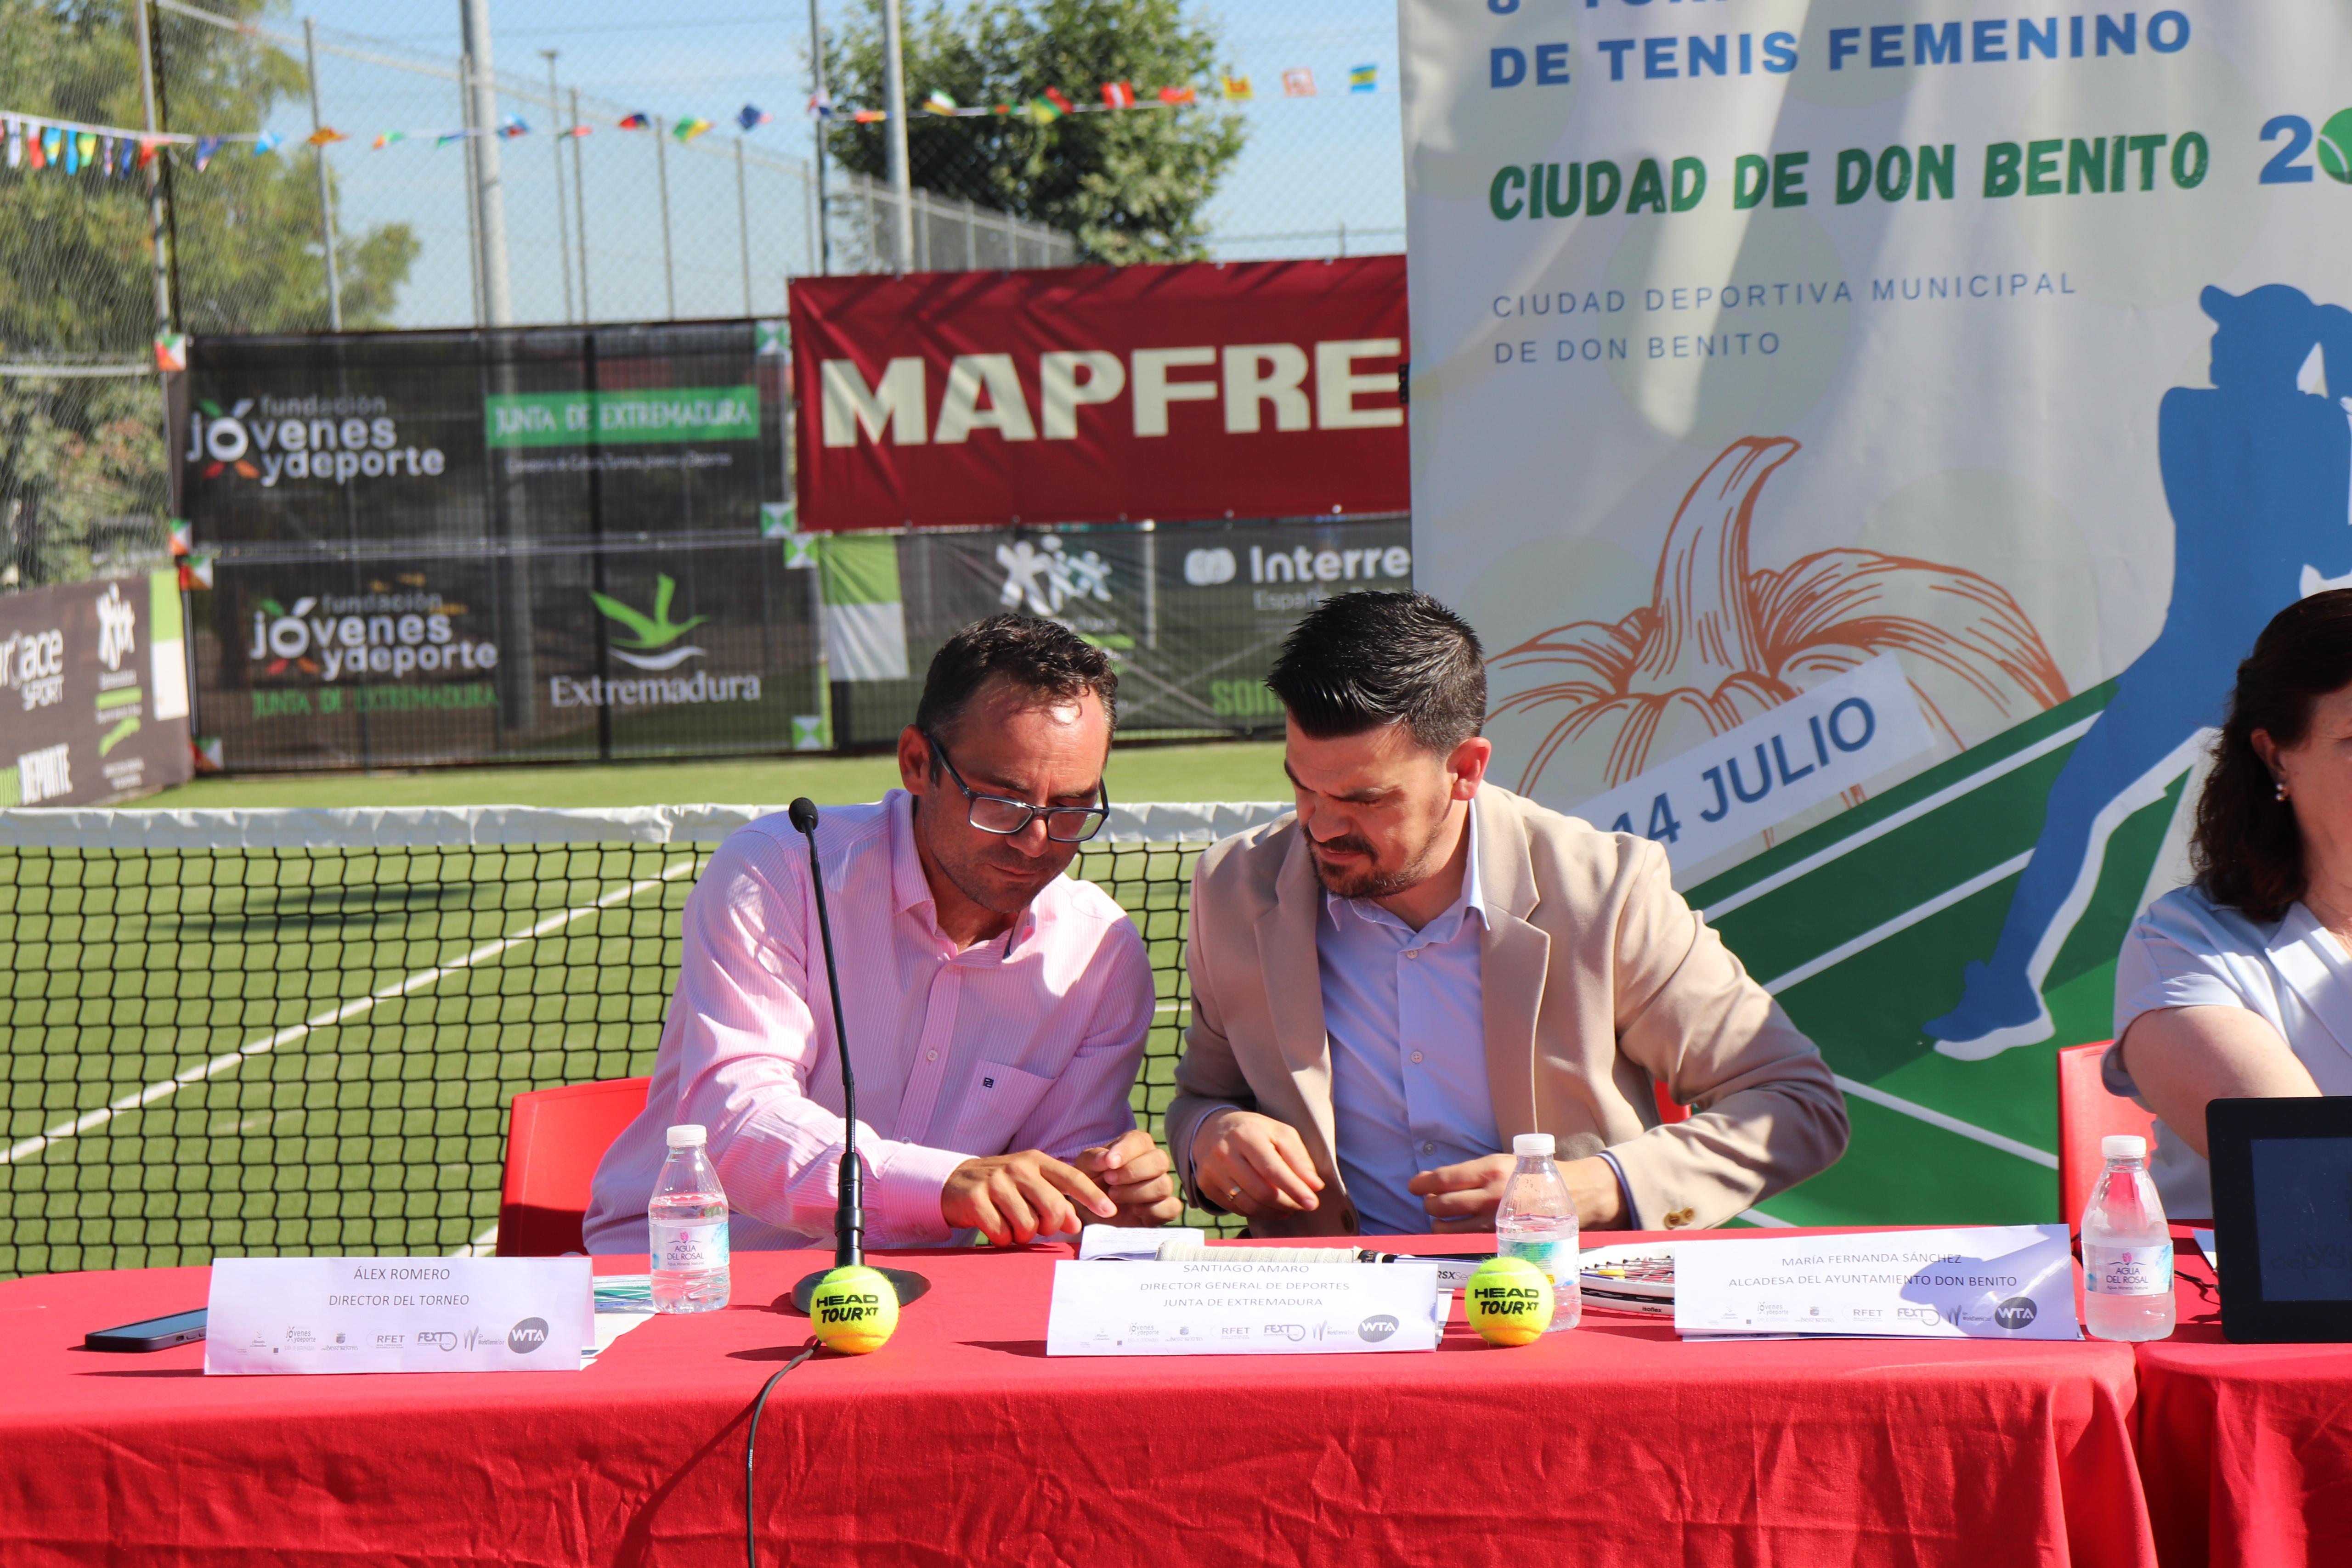 Image 1 of article La Junta de Extremadura apoya el VIII Torneo Internacional de Tenis Femenino que se celebrará en Don Benito del 6 al 14 de julio